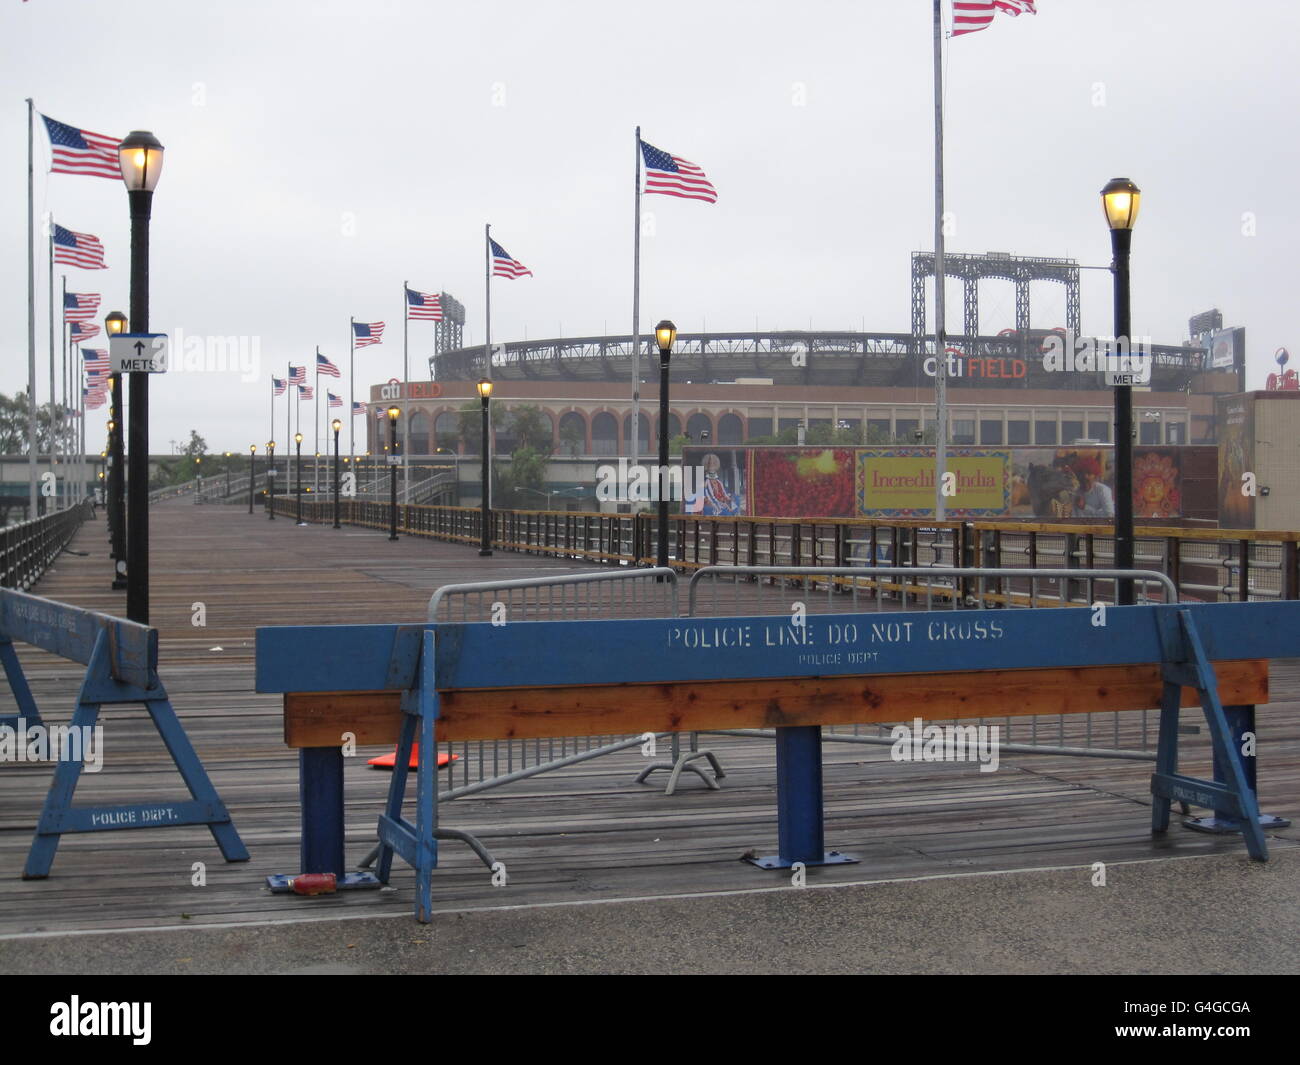 La scène autour du stade Citifield, à New York, alors que le temps commence à s'améliorer à mesure que passe la pire tempête tropicale Irene. Banque D'Images